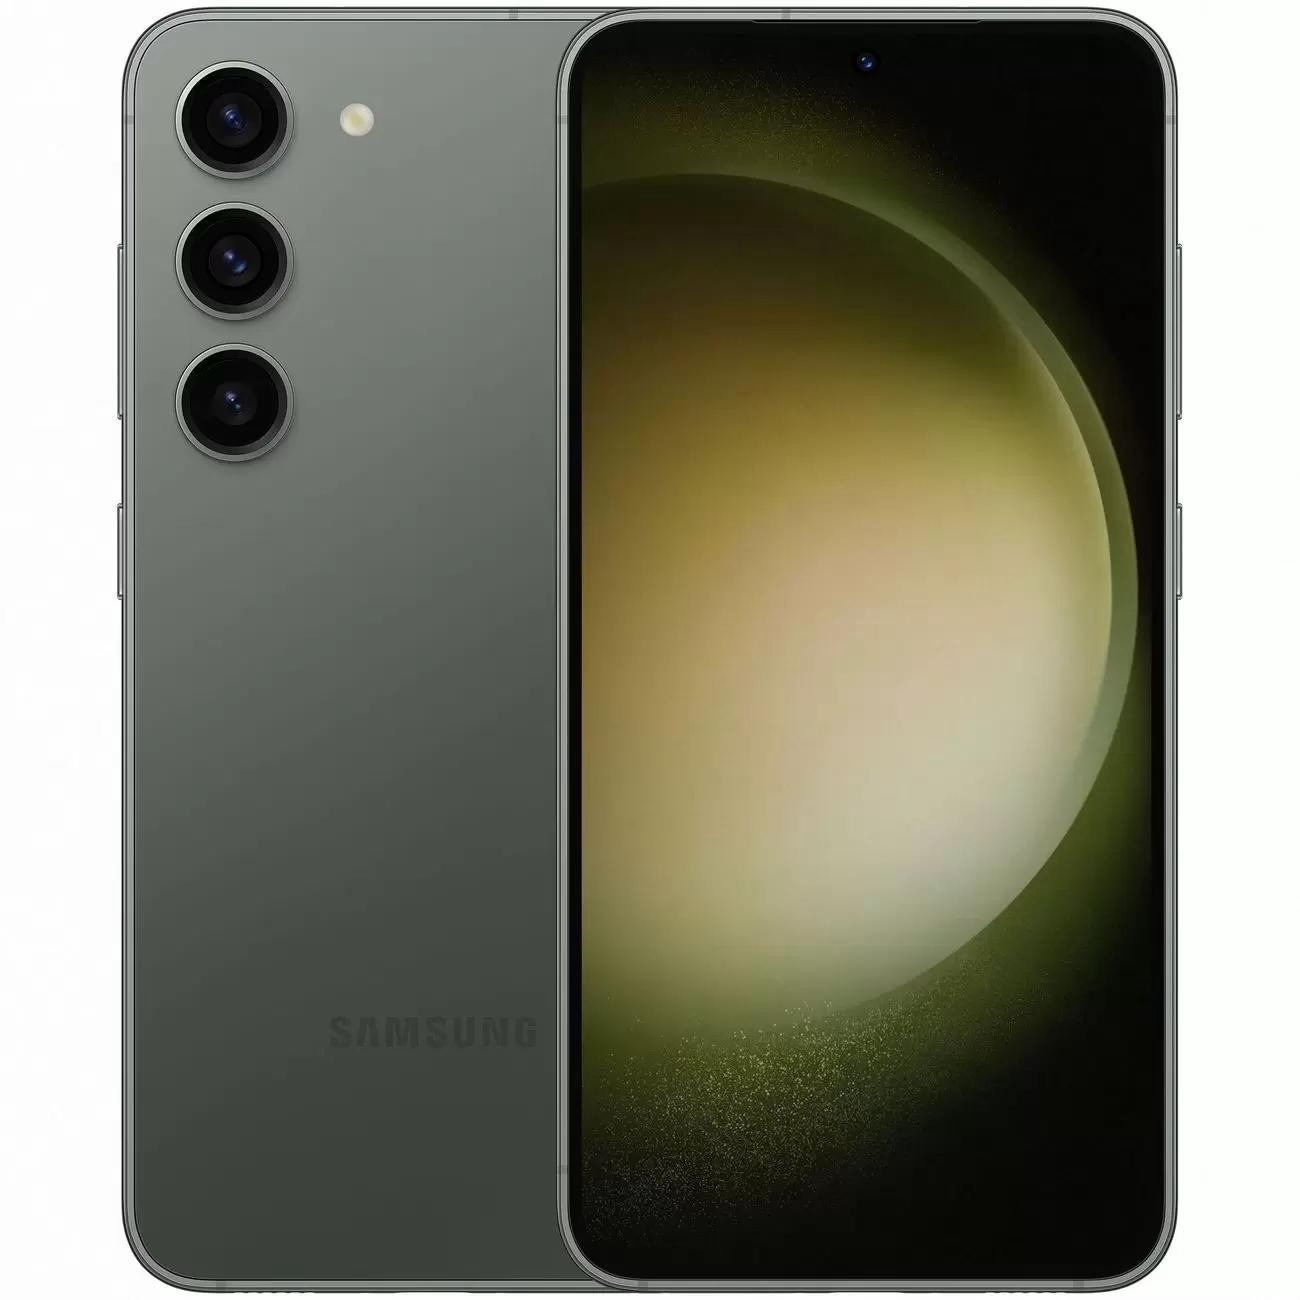 Купить смартфон samsung galaxy s23+ 8/512gb green S-Серия в официальном магазине Apple, Samsung, Xiaomi. iPixel.ru Купить, заказ, кредит, рассрочка, отзывы,  характеристики, цена,  фотографии, в подарок.